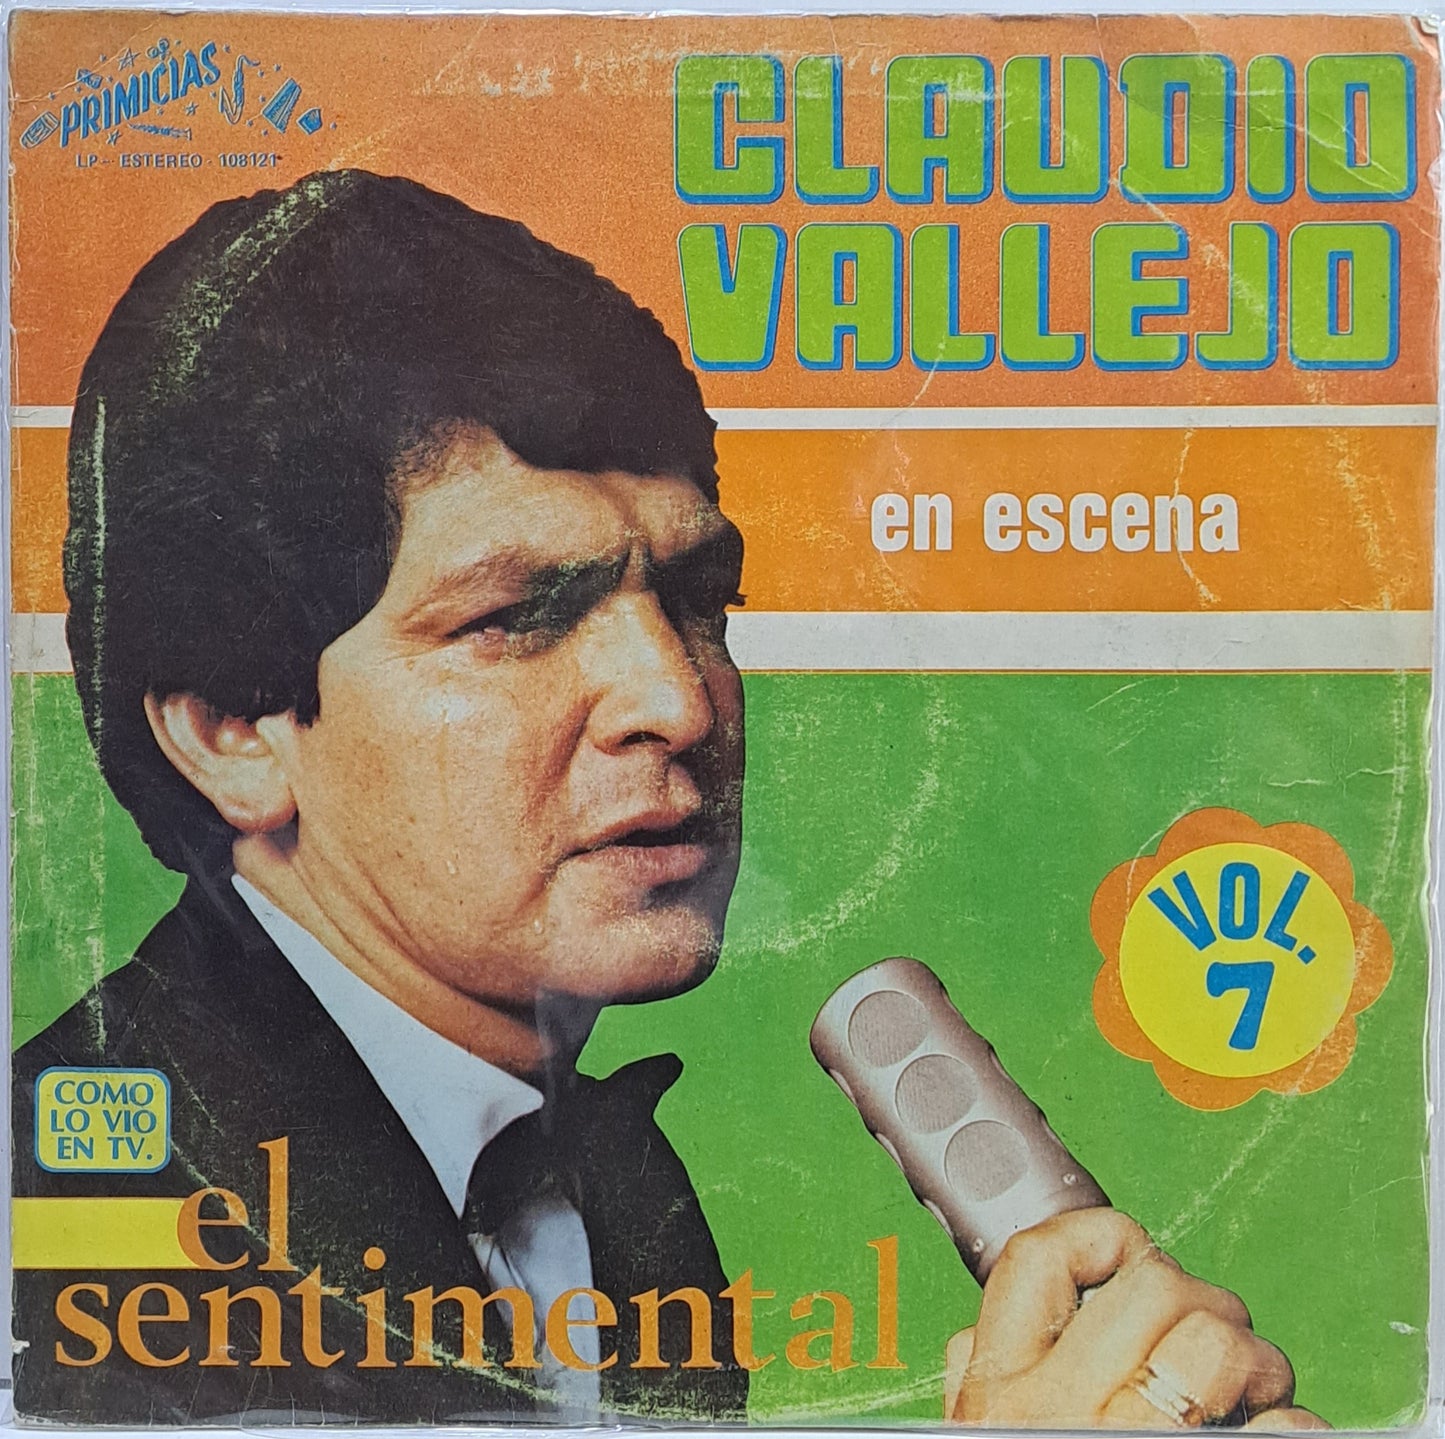 CLAUDIO VALLEJO - EN ESCENA VOL.7  LP